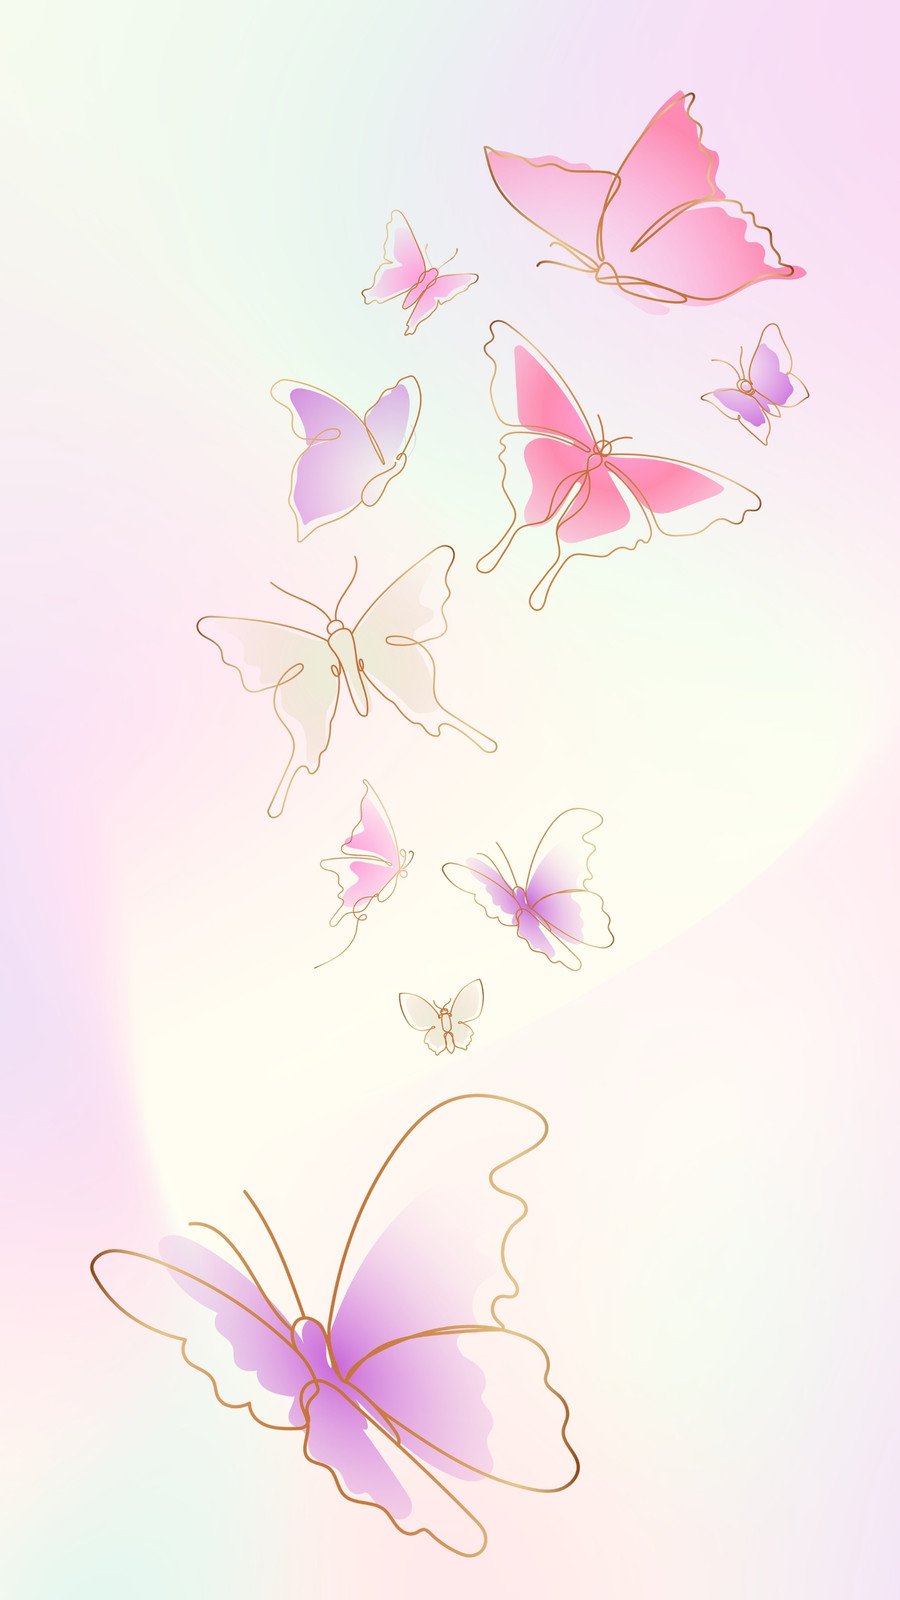 Pink Butterfly Aesthetic Wallpapers Free download  PixelsTalkNet